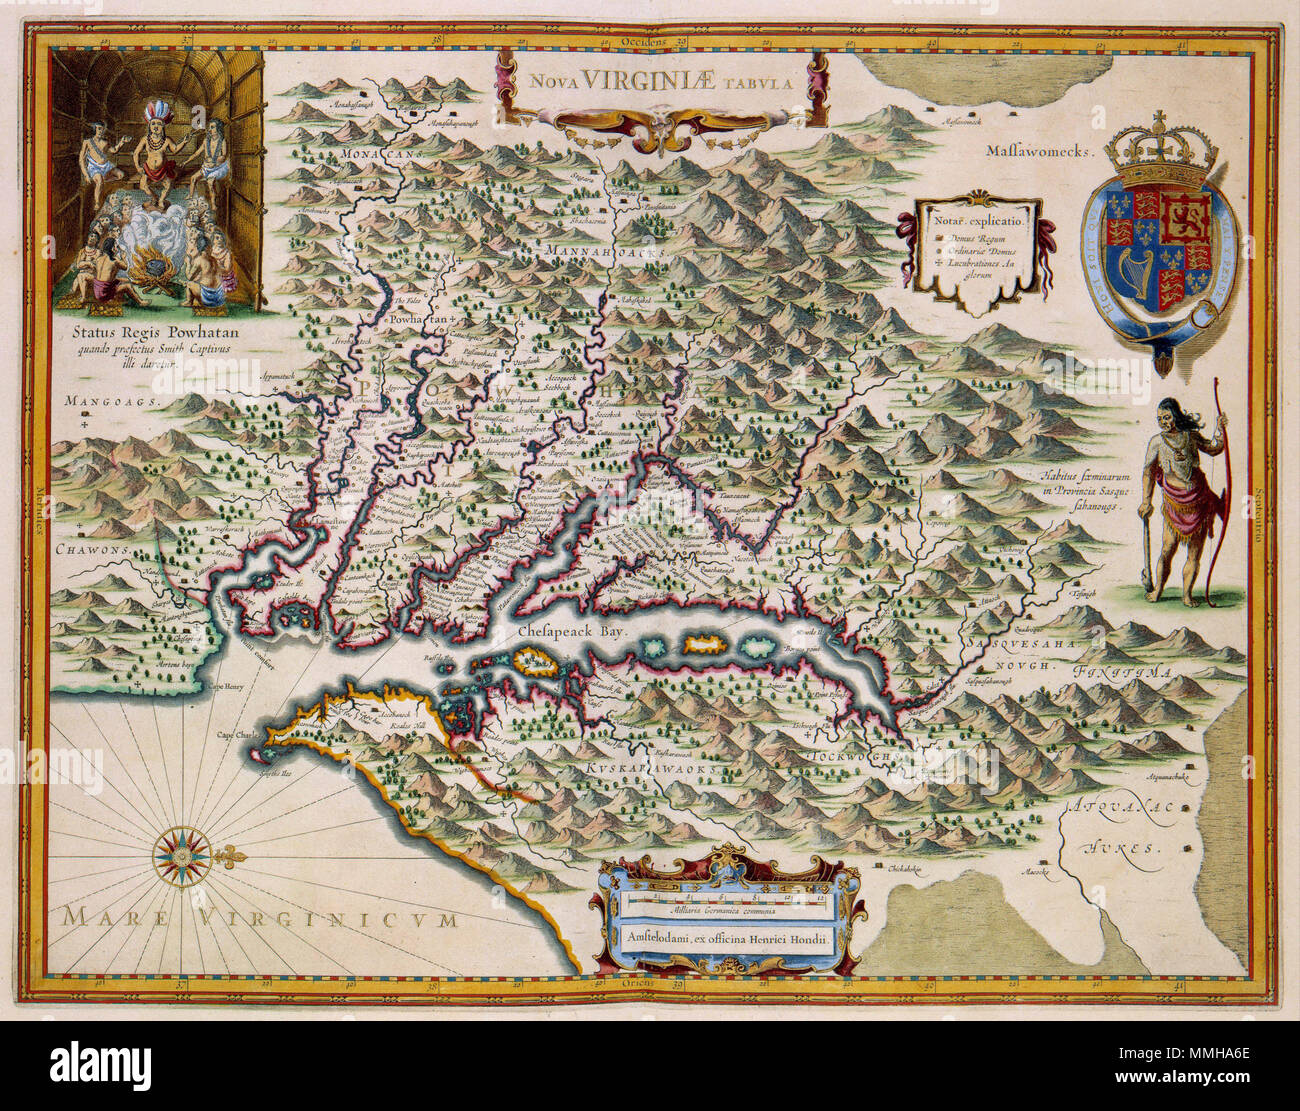 . Nederlands: Deze kaart van de Virginia werd oorspronkelijk nel 1633 porta gepubliceerd Henricus Hondius II (1597-1651) en Jan Janssonius . Hier zien abbiamo een latere uitgave uit omstreeks 1636. De kaart era gebaseerd op een prototype van de mano van de Engelsman John Smith die deze voormalige Britse kolonie intensief bereisde en zijn bevindingen nel 1612 publiceerde. Opvallend op de kaart è het interieur van een Indianenhut linksboven.; Linksboven een voorstelling van indianen: STTUS REGIS POWHATAN quando praefectus Captivus Smit illi daretur. Inglese: la mappa della Virginia è stato originariamente publishe Foto Stock